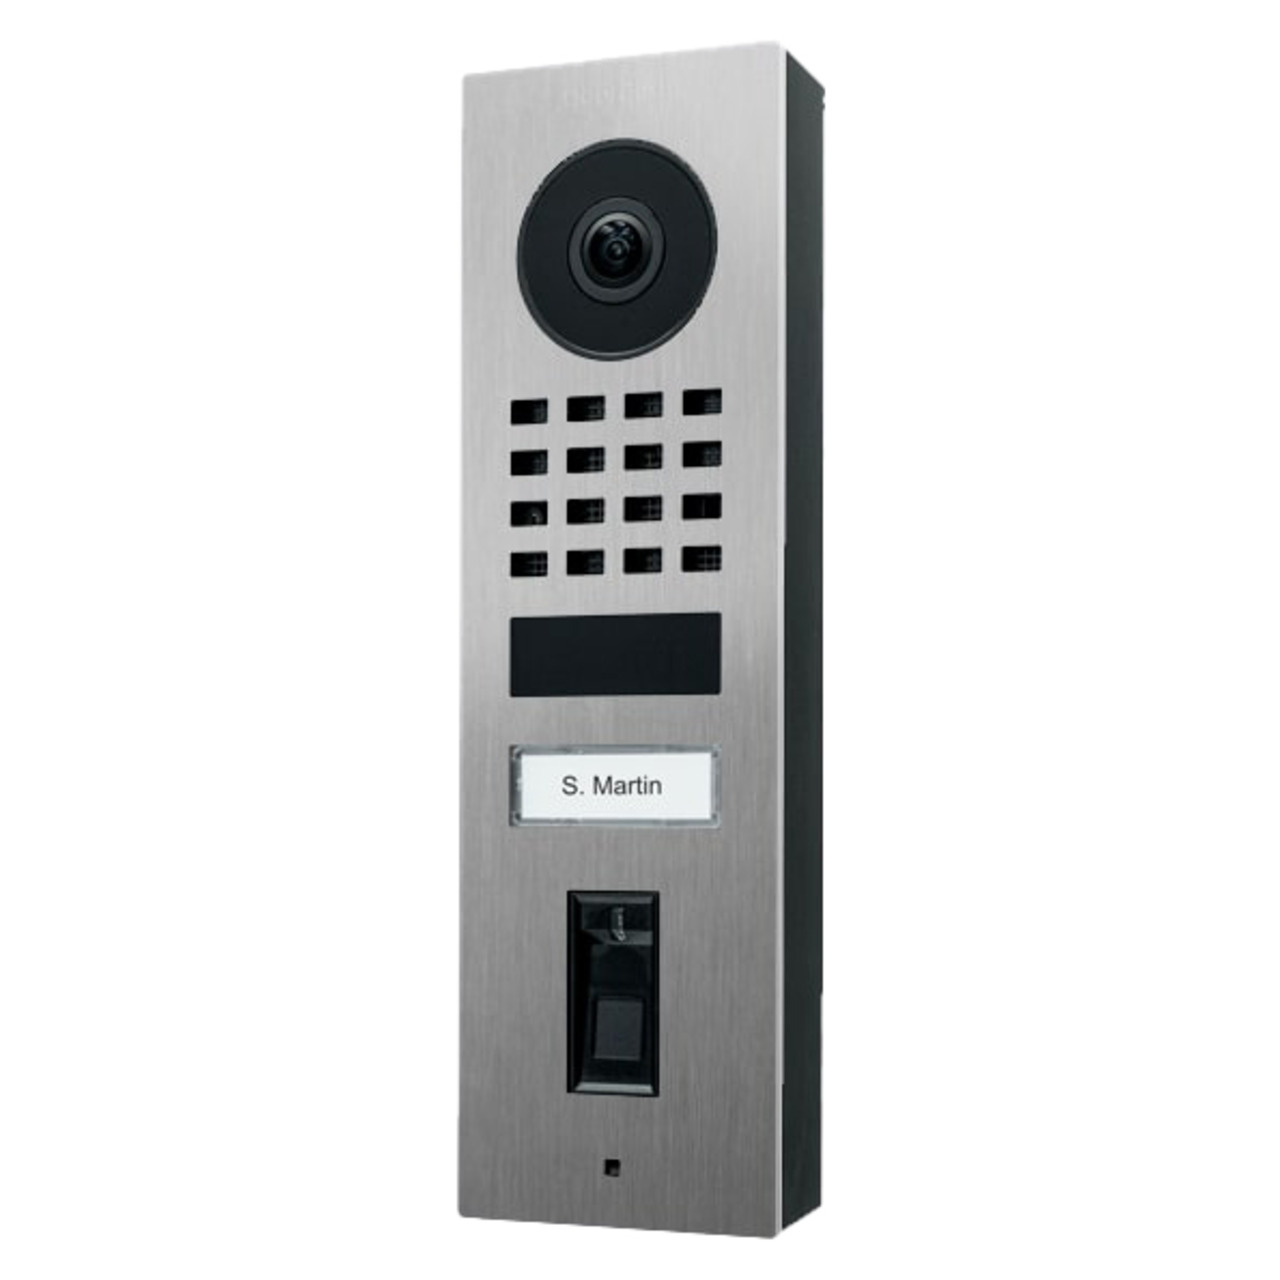 DoorBird WLAN-IP-Video-Fingerprint-Trstation D1101FV Edelstahl V4A- Unterputz unter Haustechnik